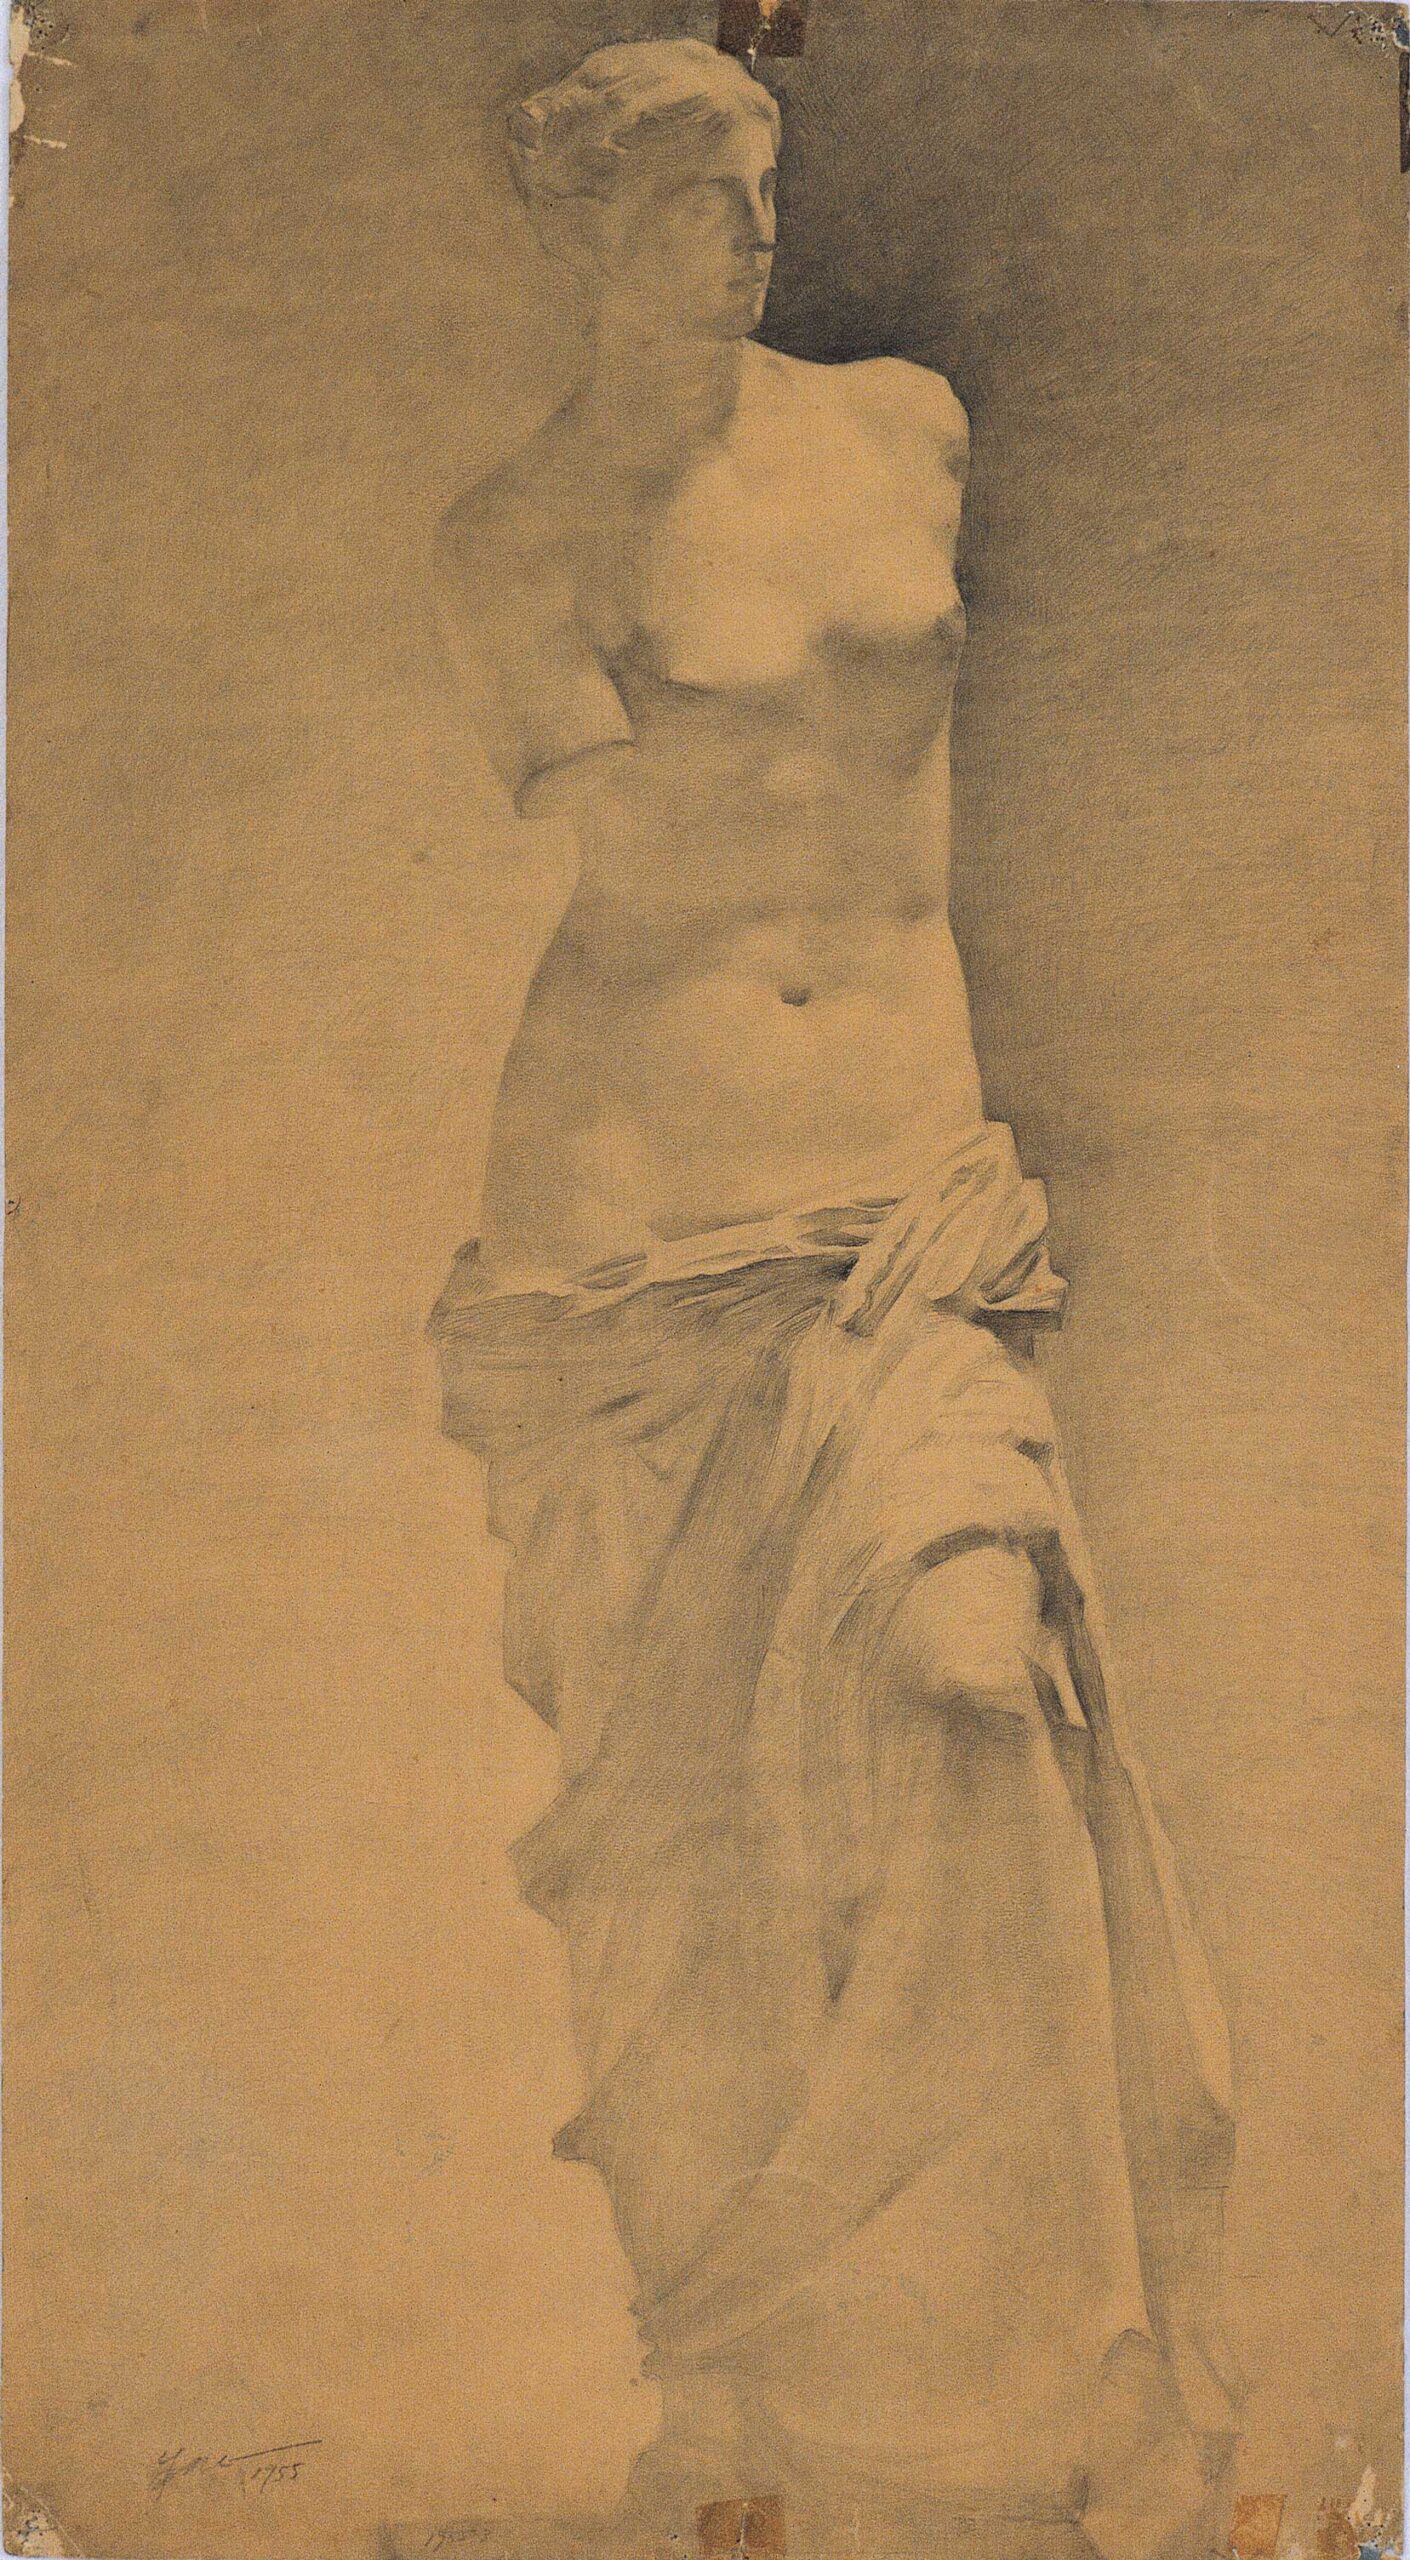 Plaster bust of Venus sketch